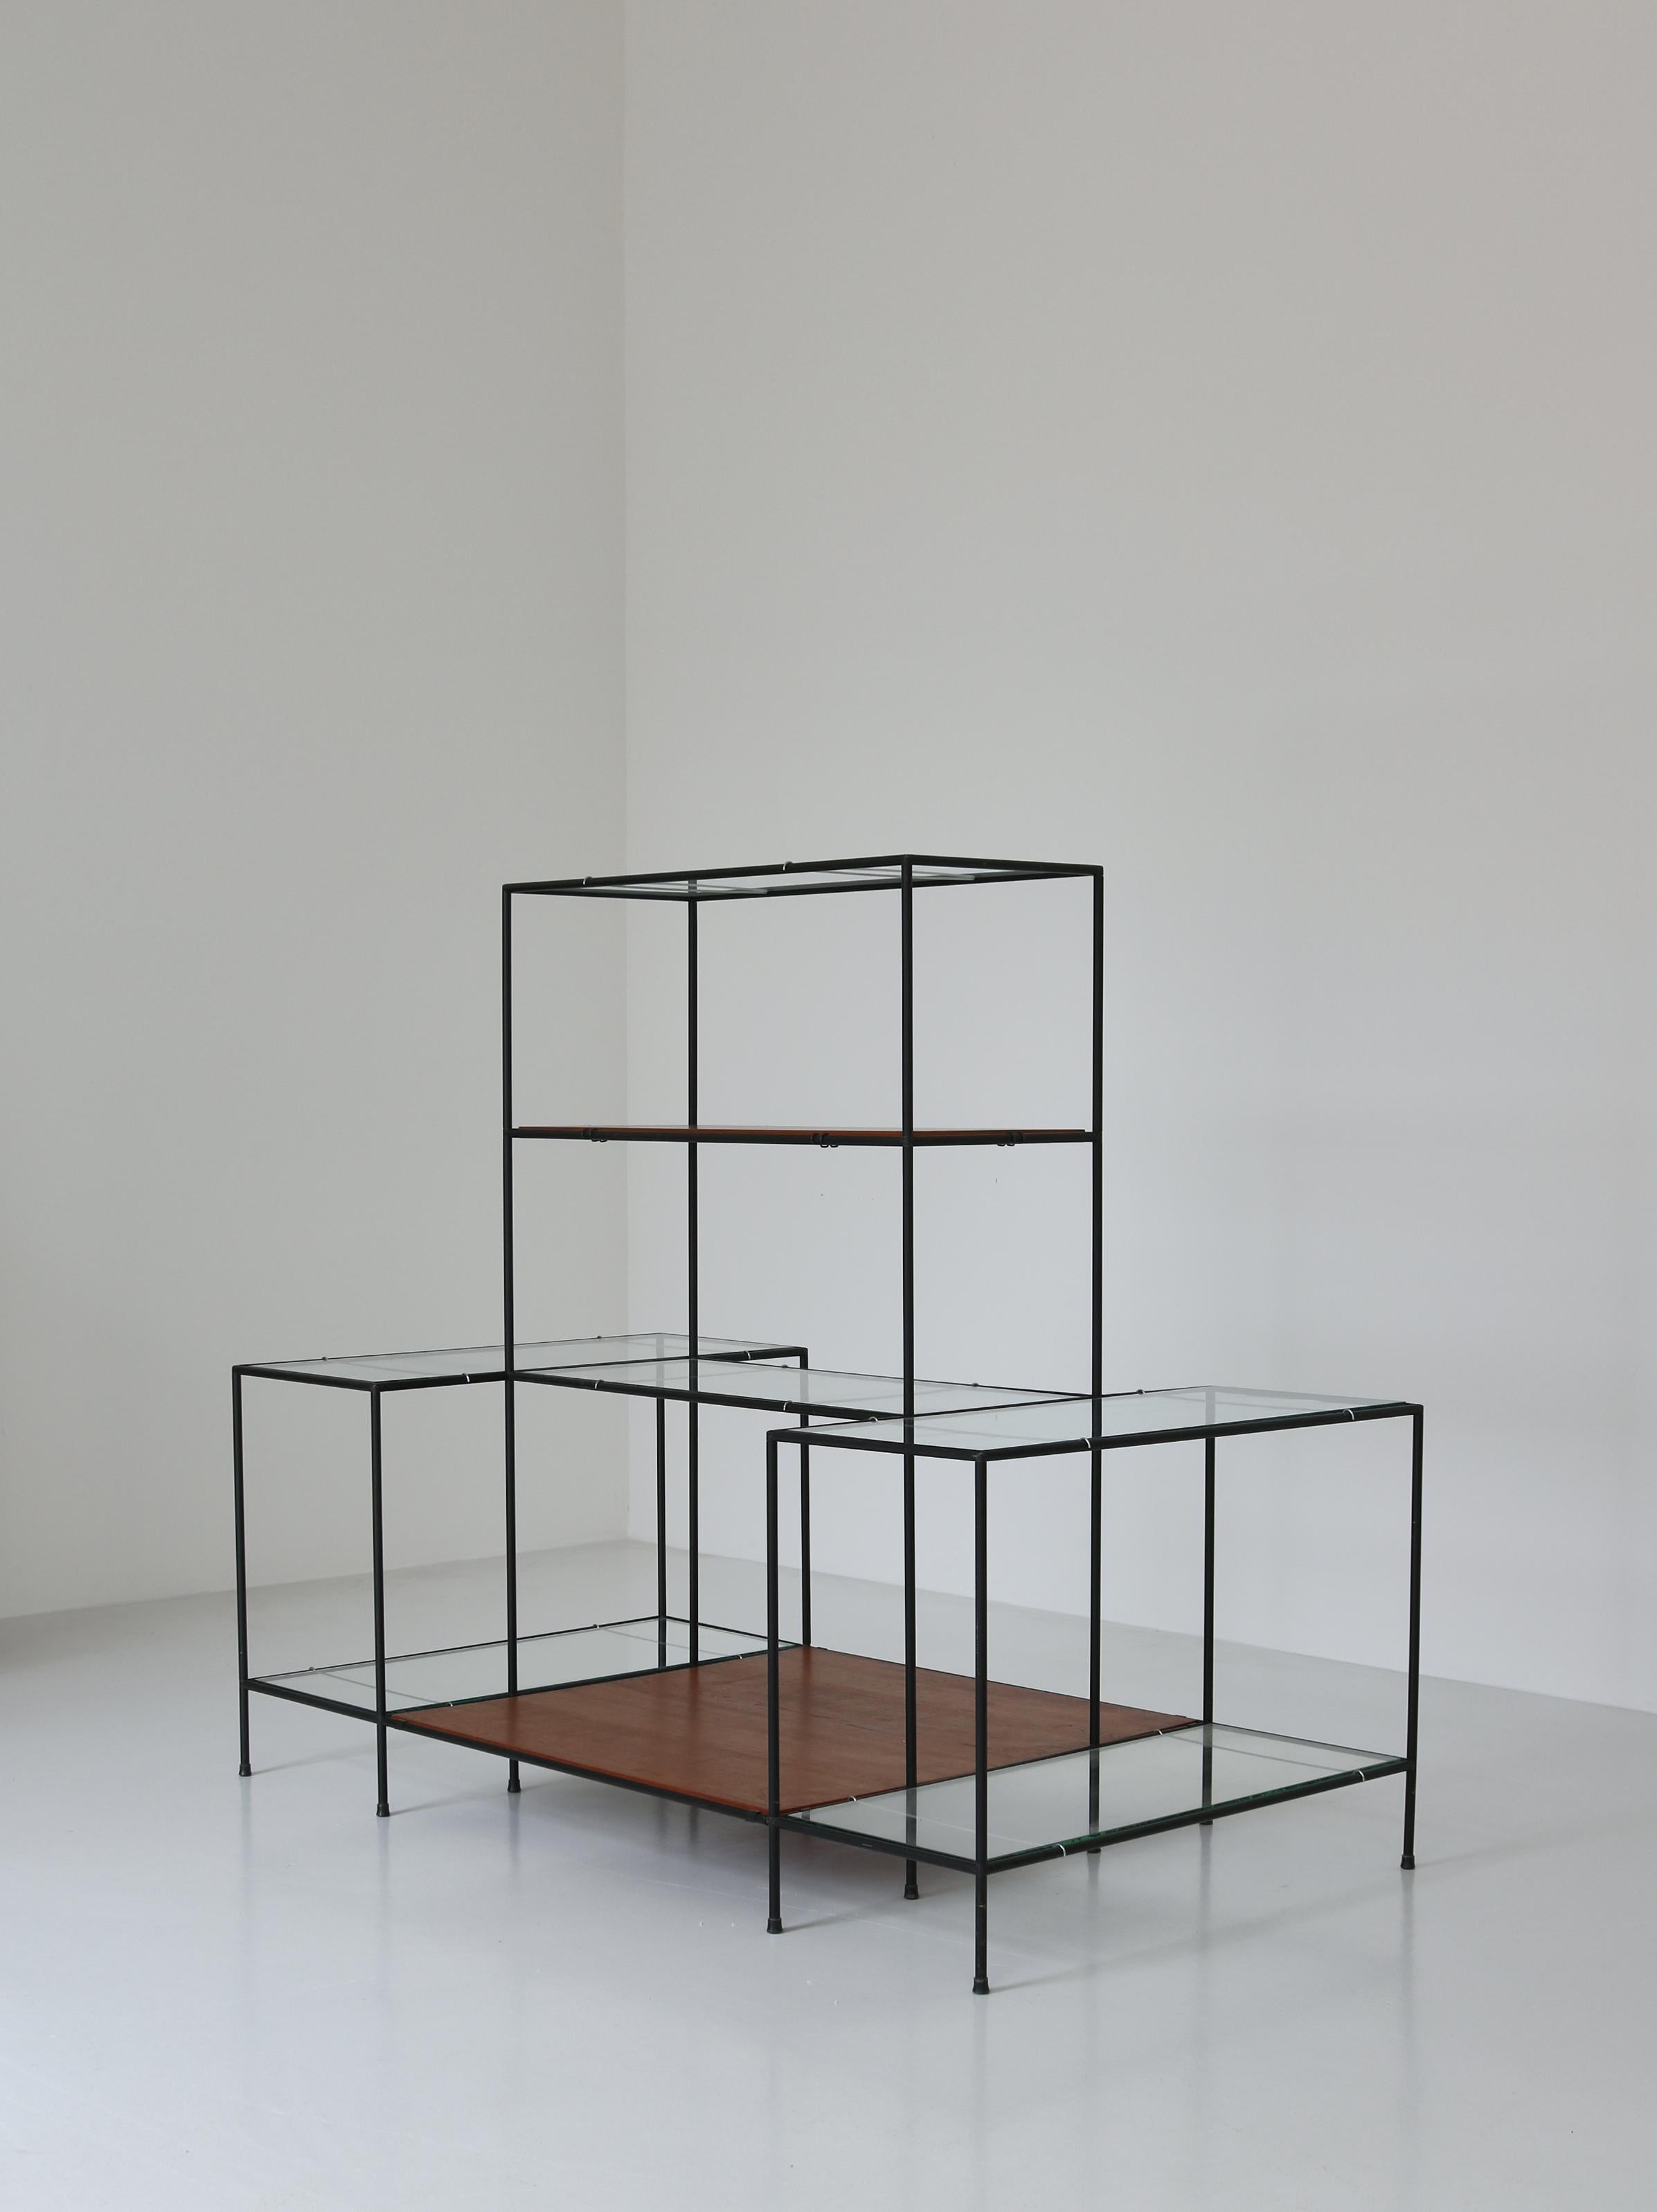 Geniales minimalistisches Regal oder Ausstellungsstück SYSTEM ABSTRACTA, entworfen von Poul Cadovius, Dänemark, in den 1960er Jahren. Das System besteht aus schwarzen Metallrohren mit patentierten Verbindungsstücken, schwimmendem Teakholz und dicken